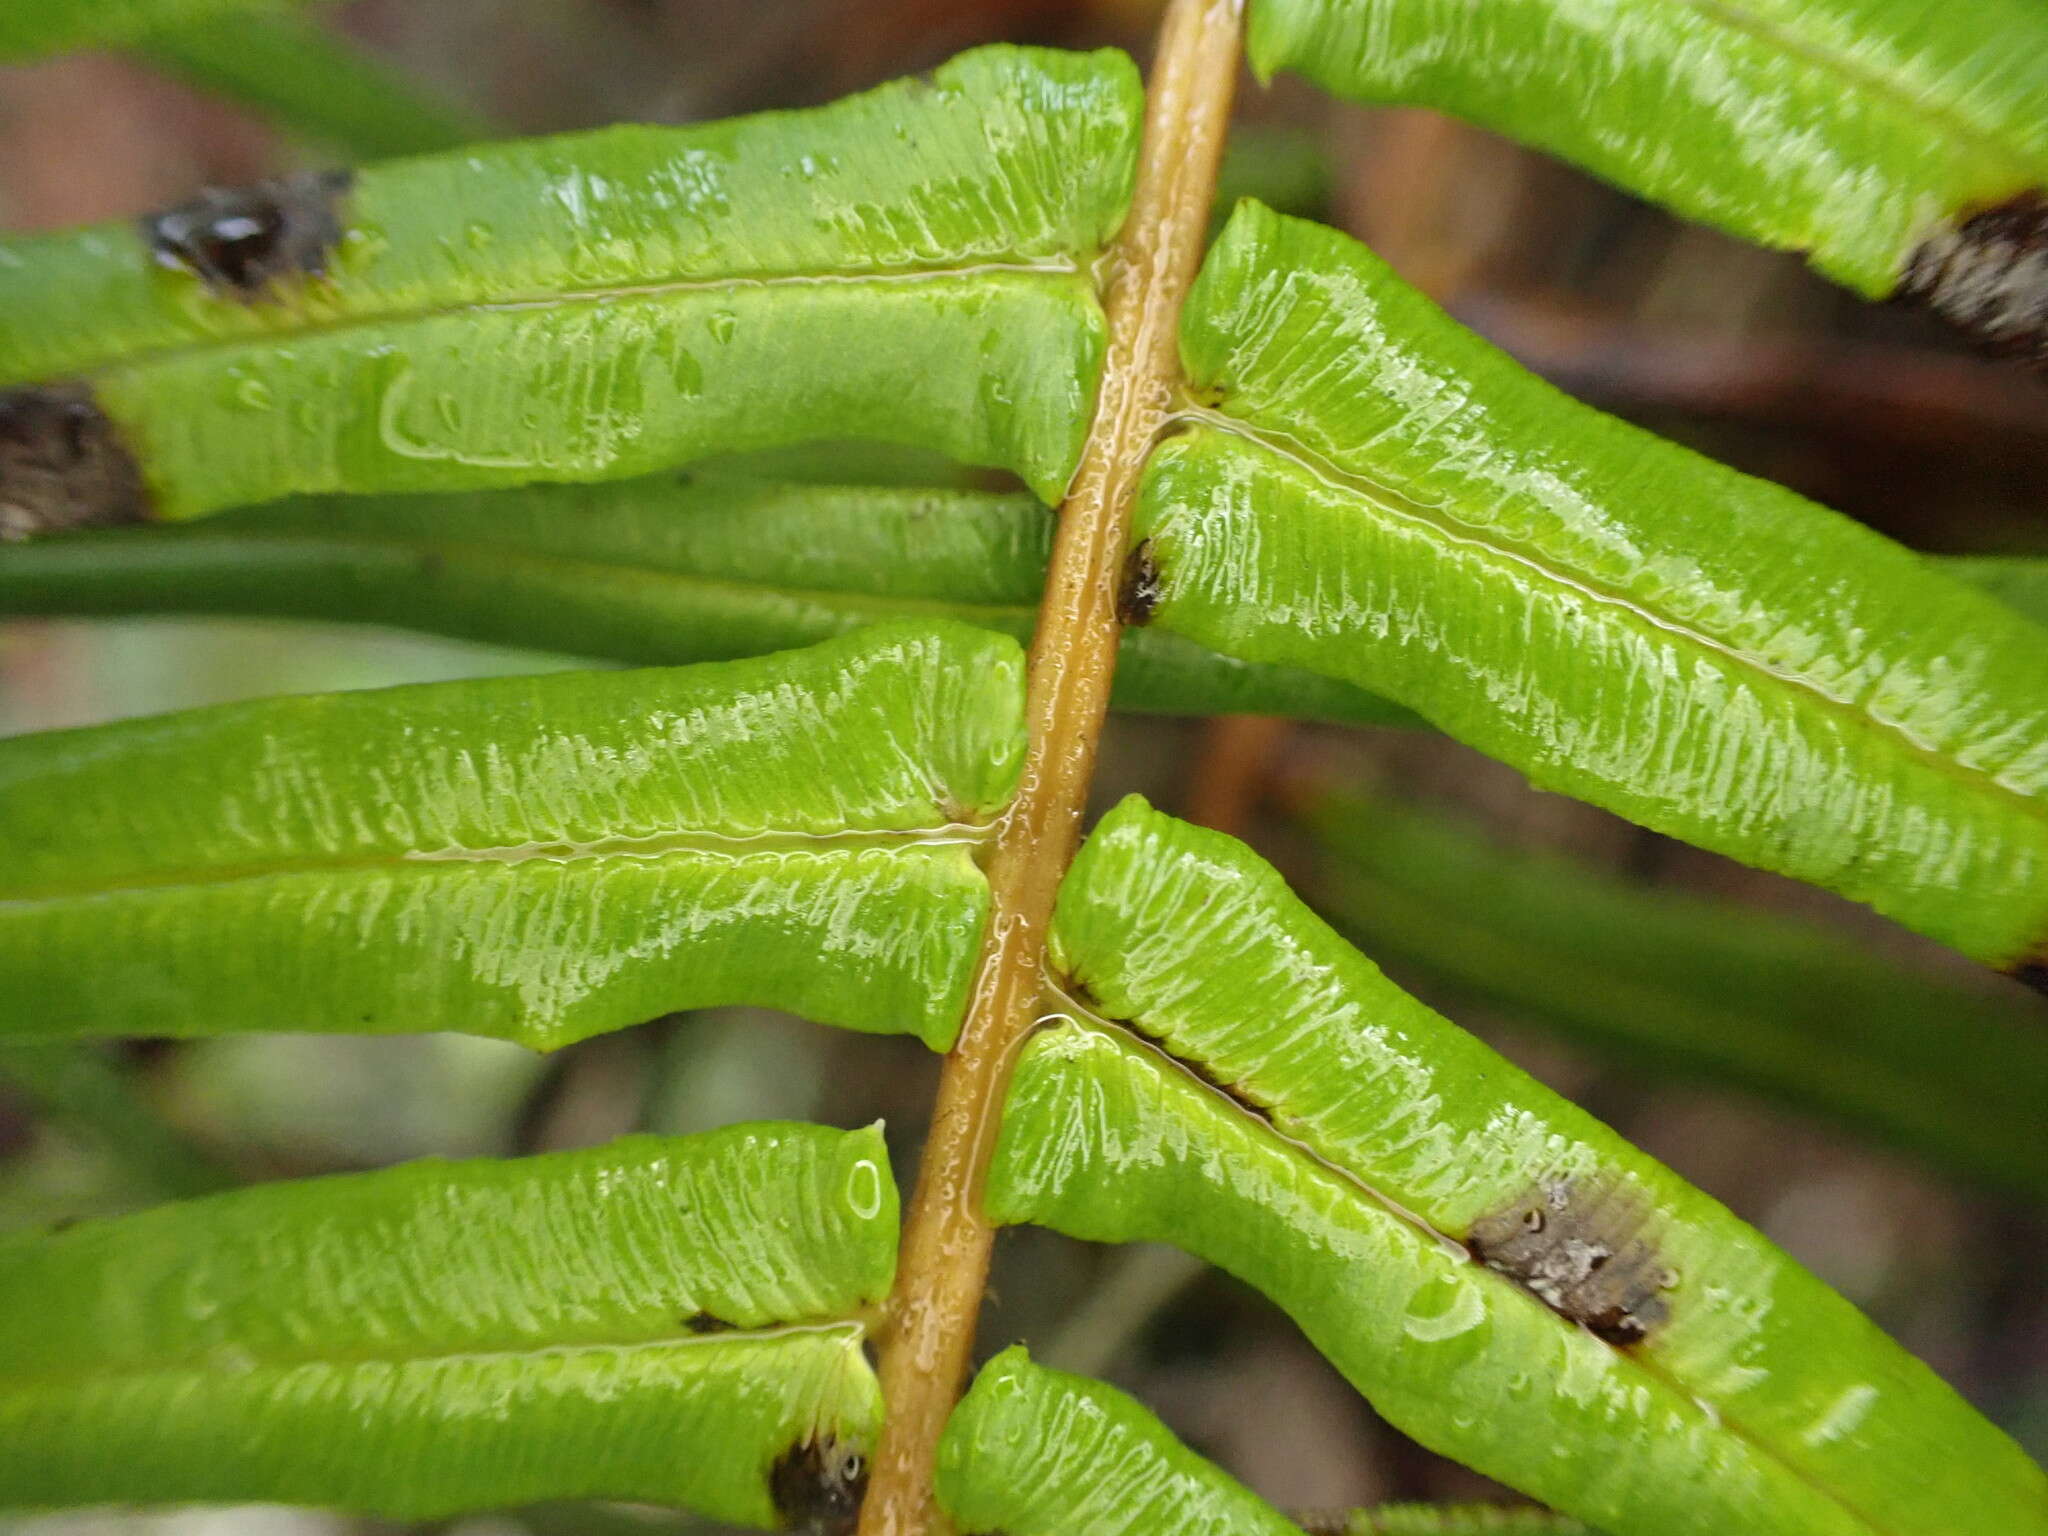 Image of Long-Leaf Brake